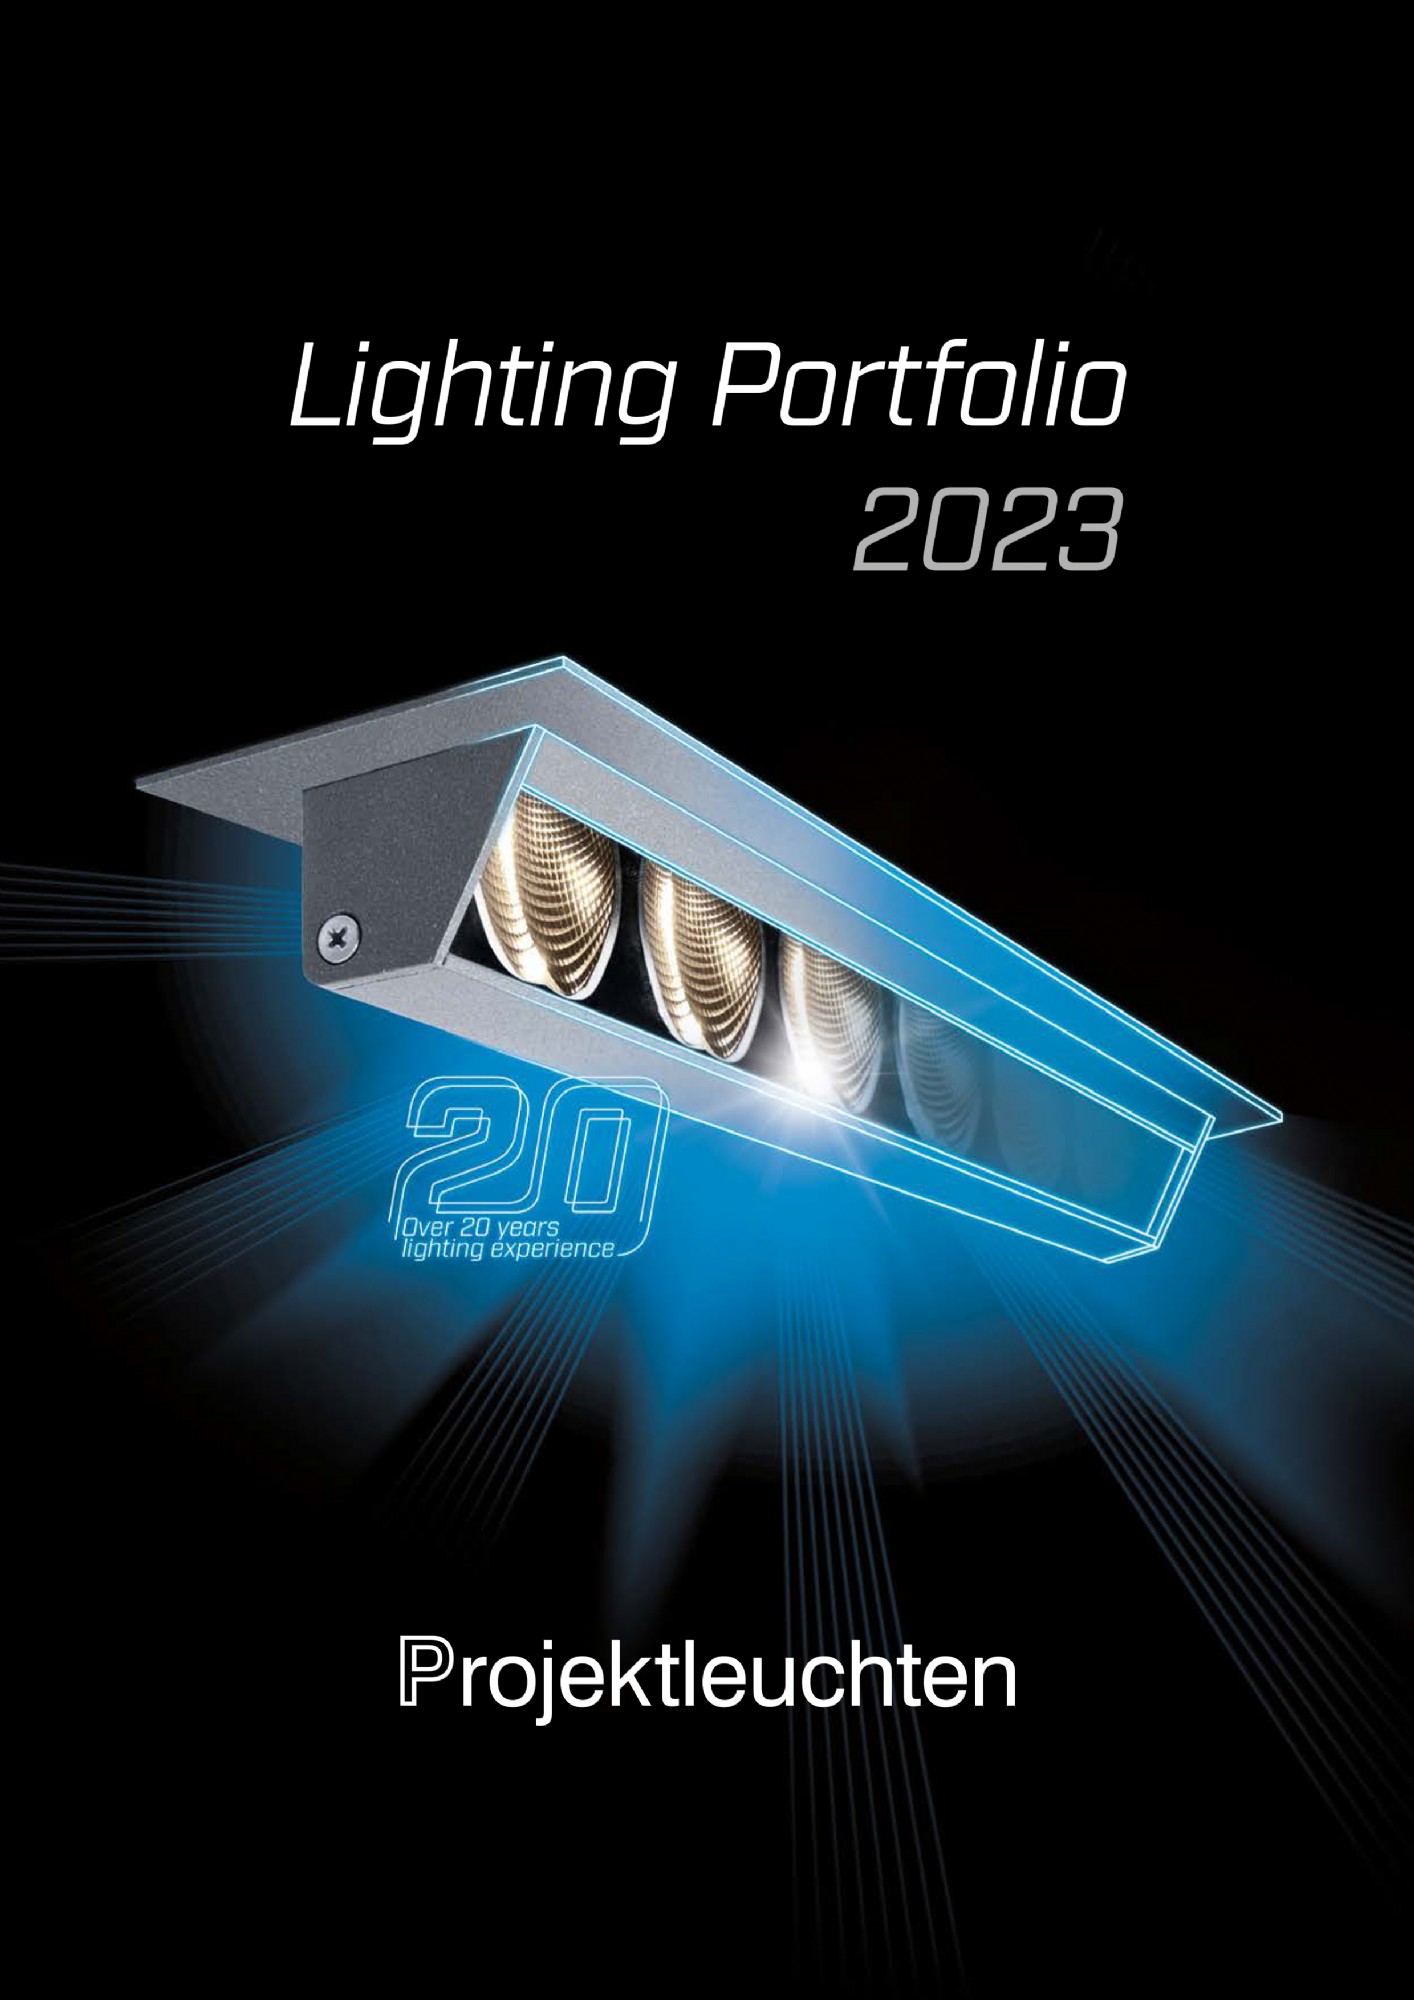 LED påbygningsspot med avanceret reflektorteknink og High power LED fra Projektleuchten